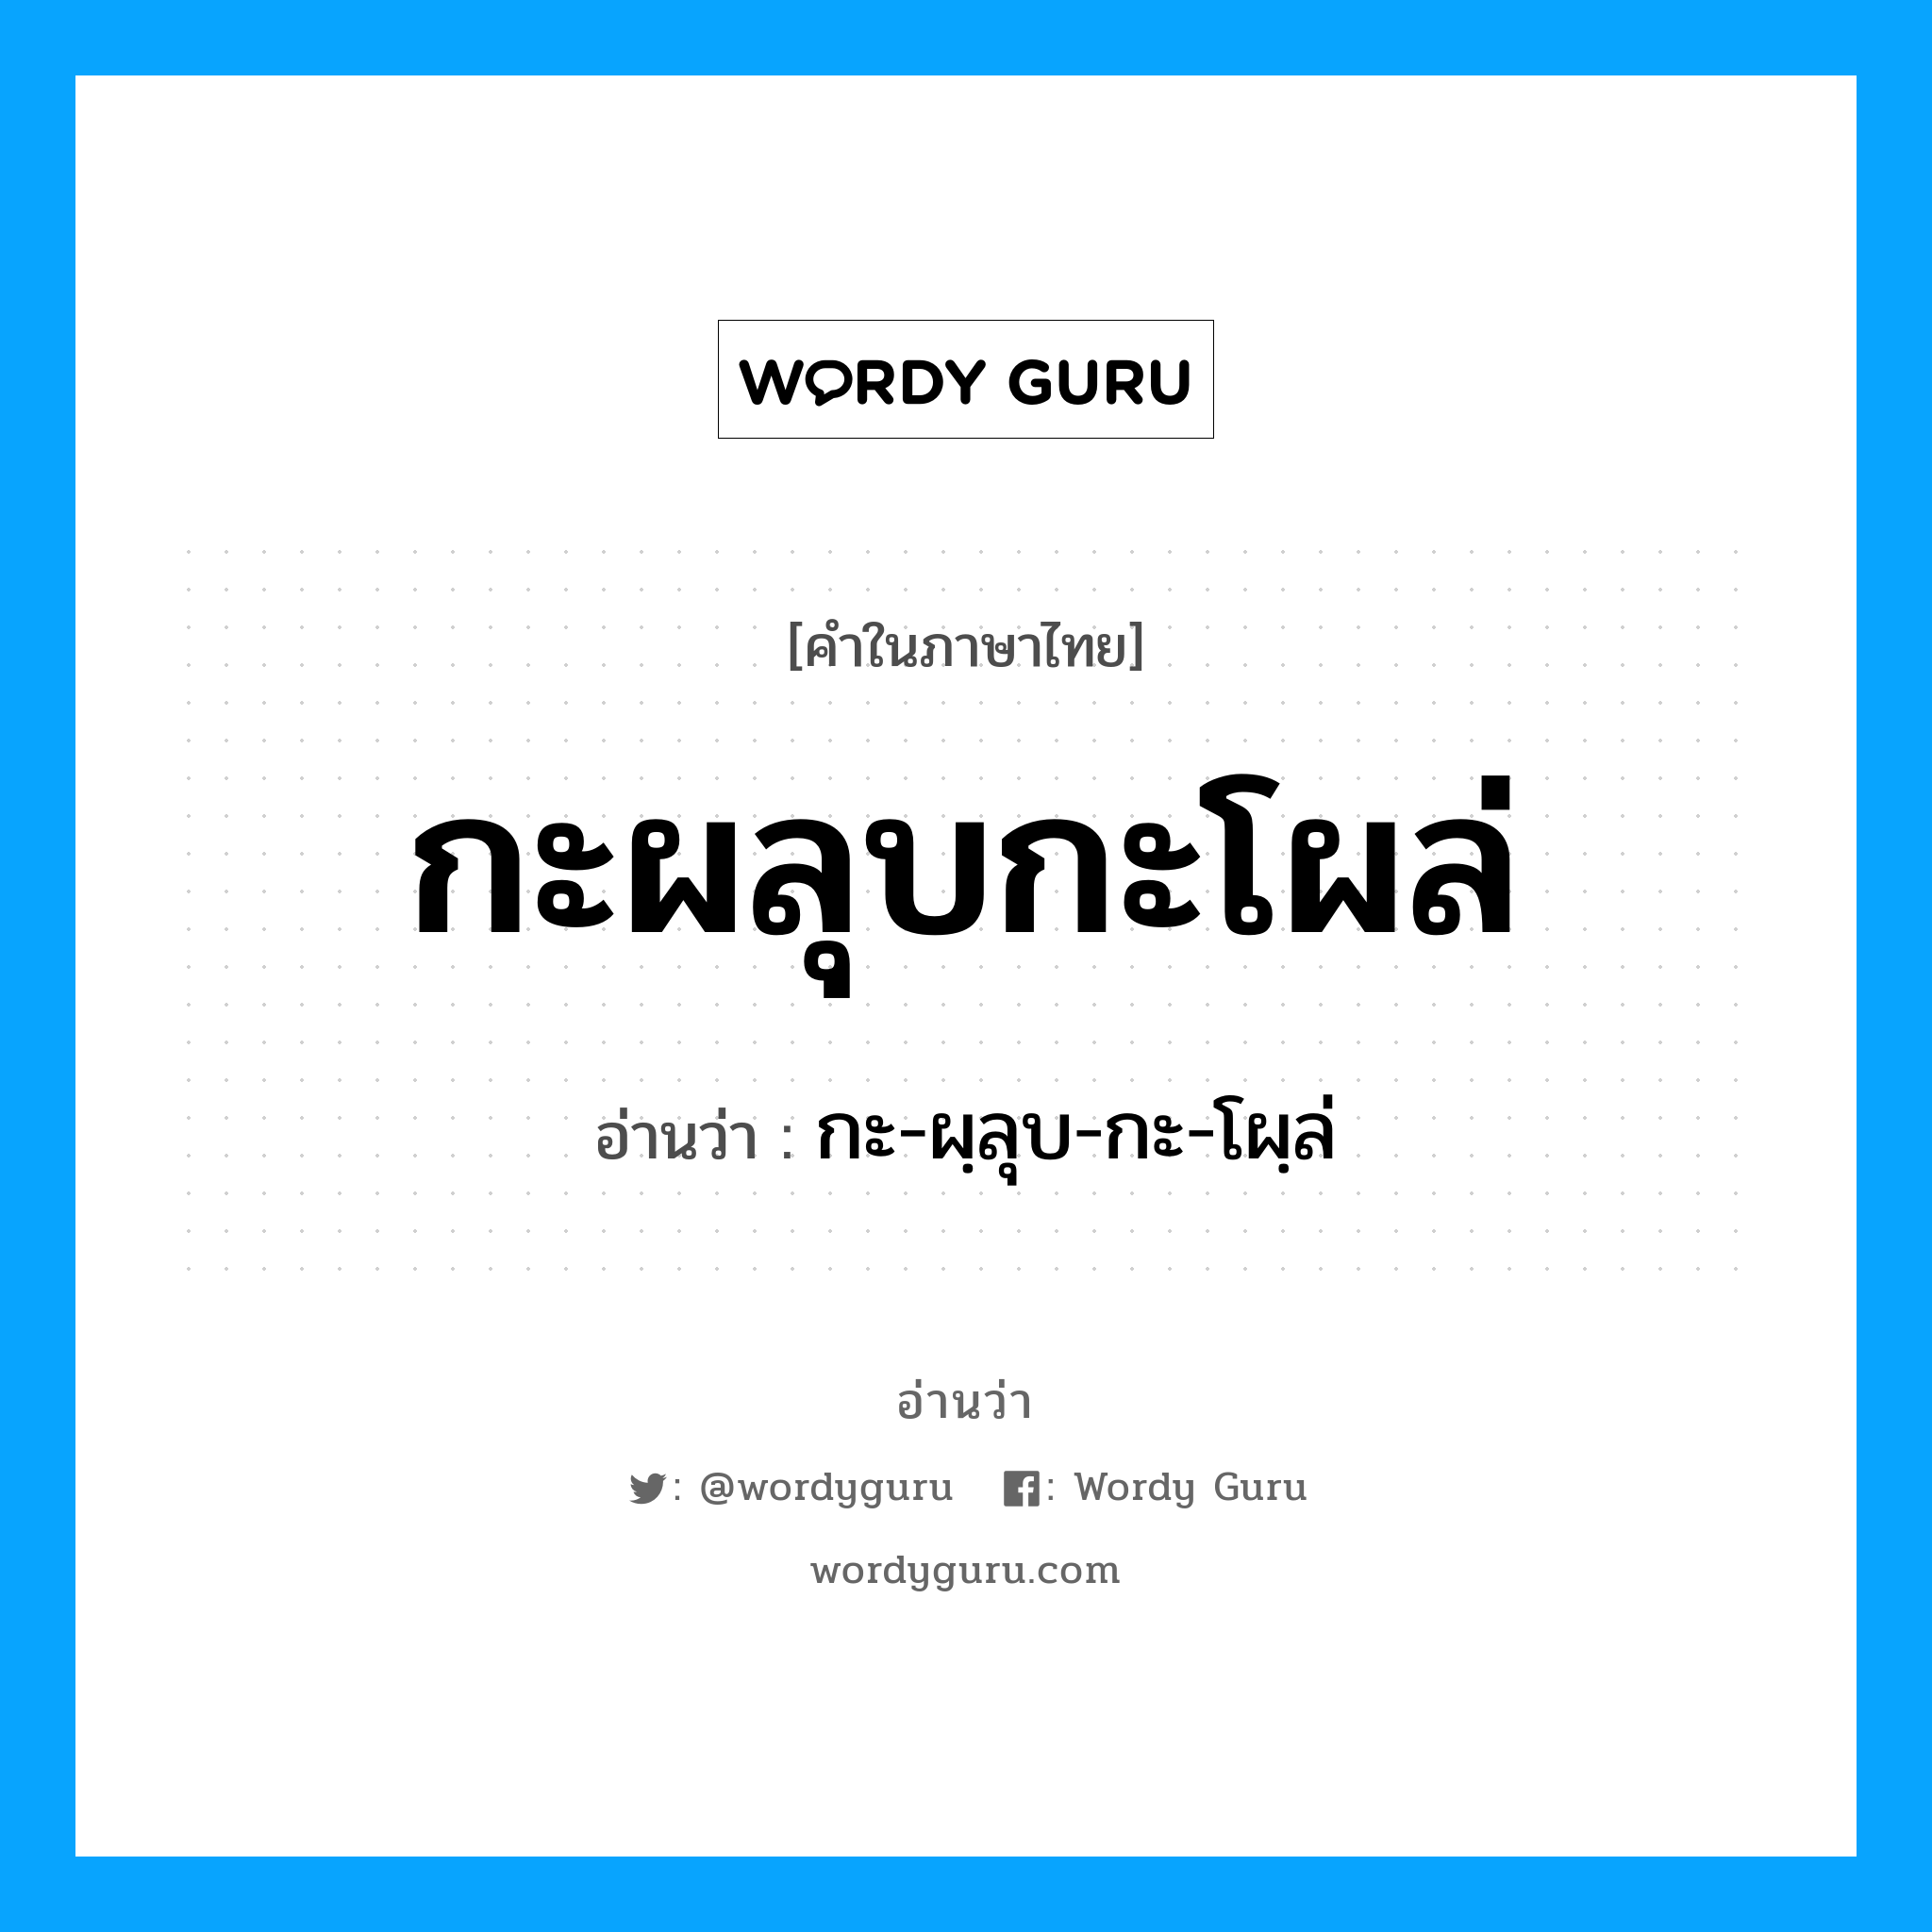 กะ-ผฺลุบ-กะ-โผฺล่ เป็นคำอ่านของคำไหน?, คำในภาษาไทย กะ-ผฺลุบ-กะ-โผฺล่ อ่านว่า กะผลุบกะโผล่